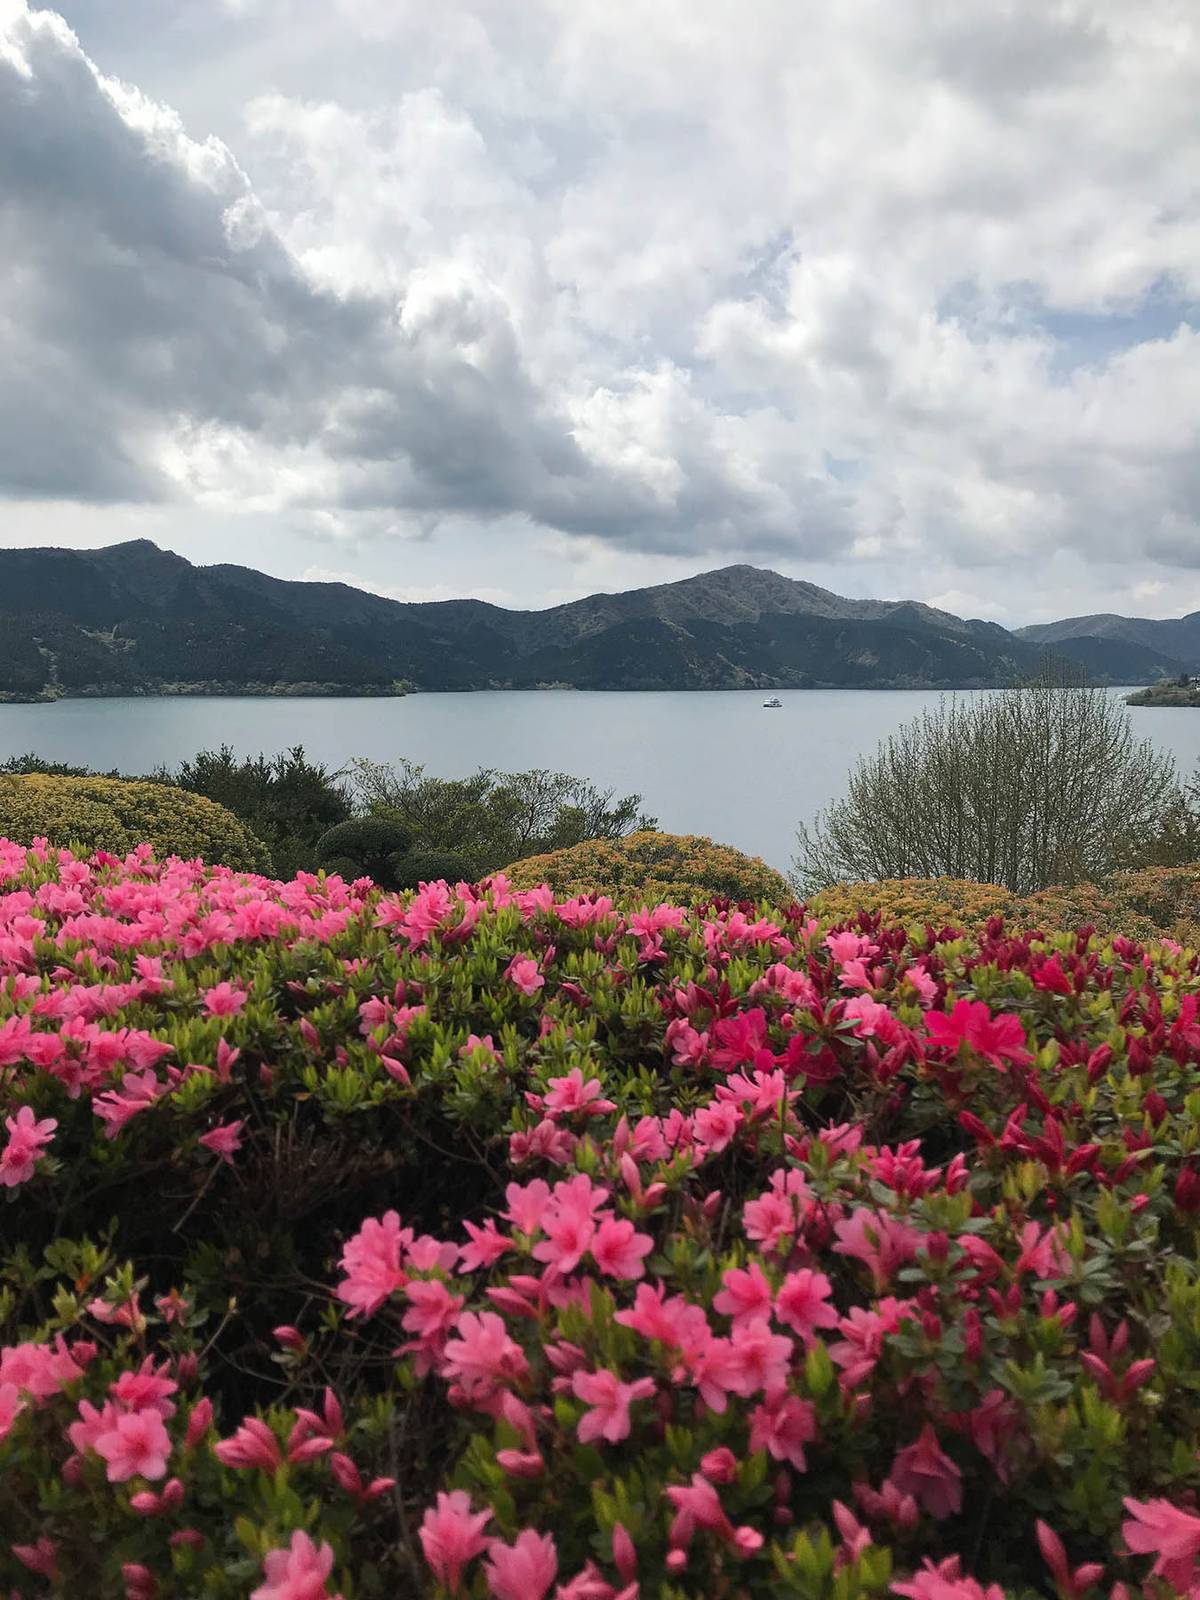 Весной и летом в Японии постоянно что-то цветет и помимо сакуры. Это озеро Аши на горном курорте Хаконе